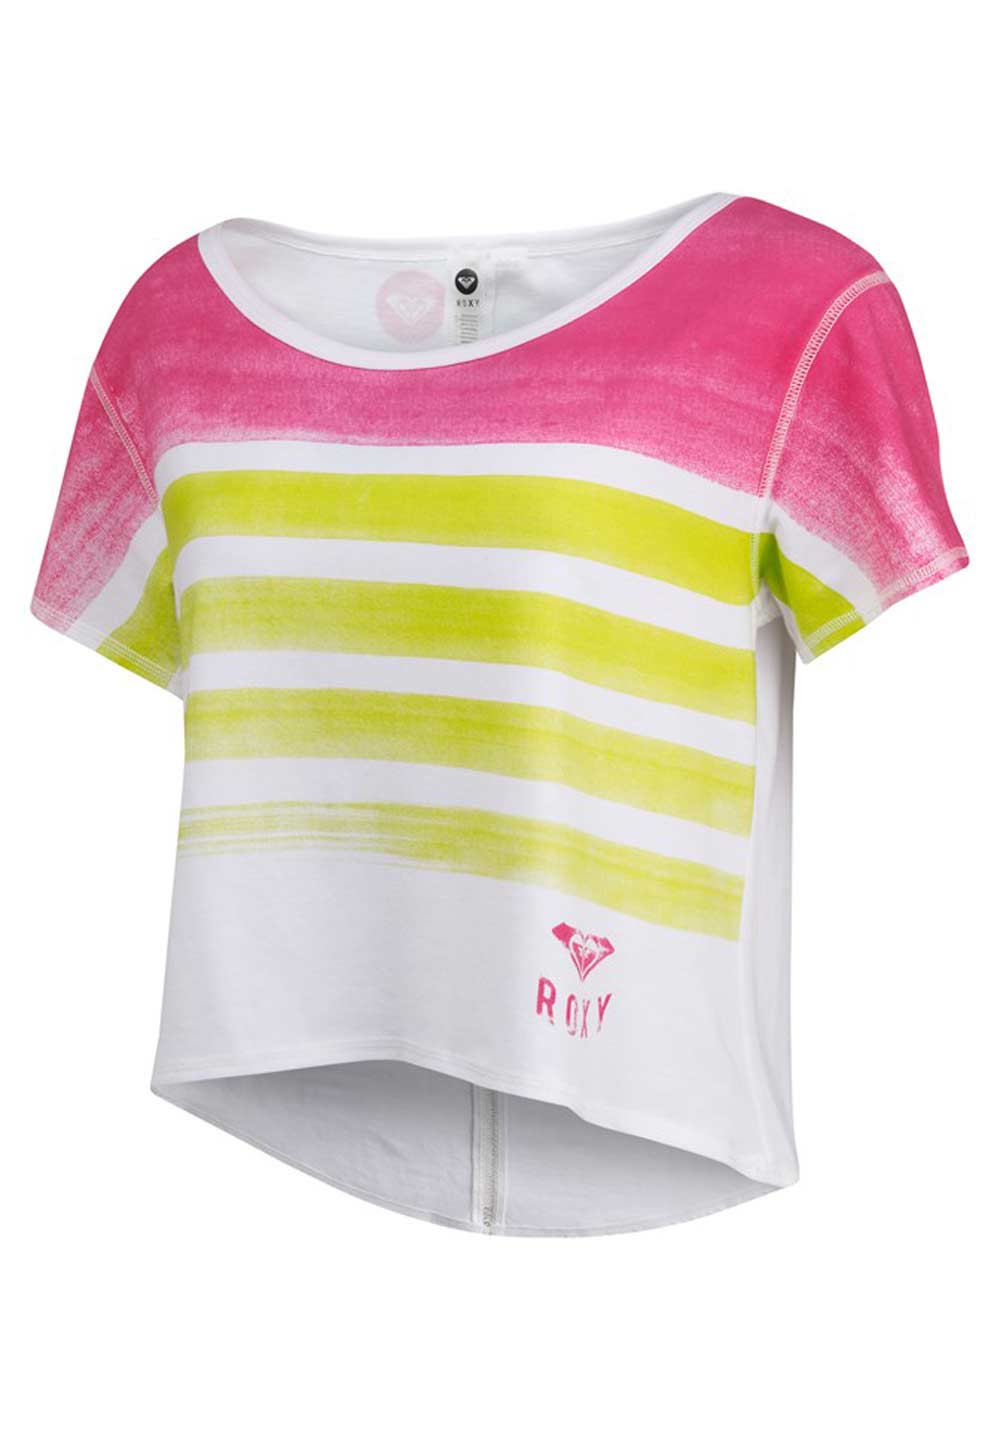 Roxy Marken-Shirt, weiß-bunt